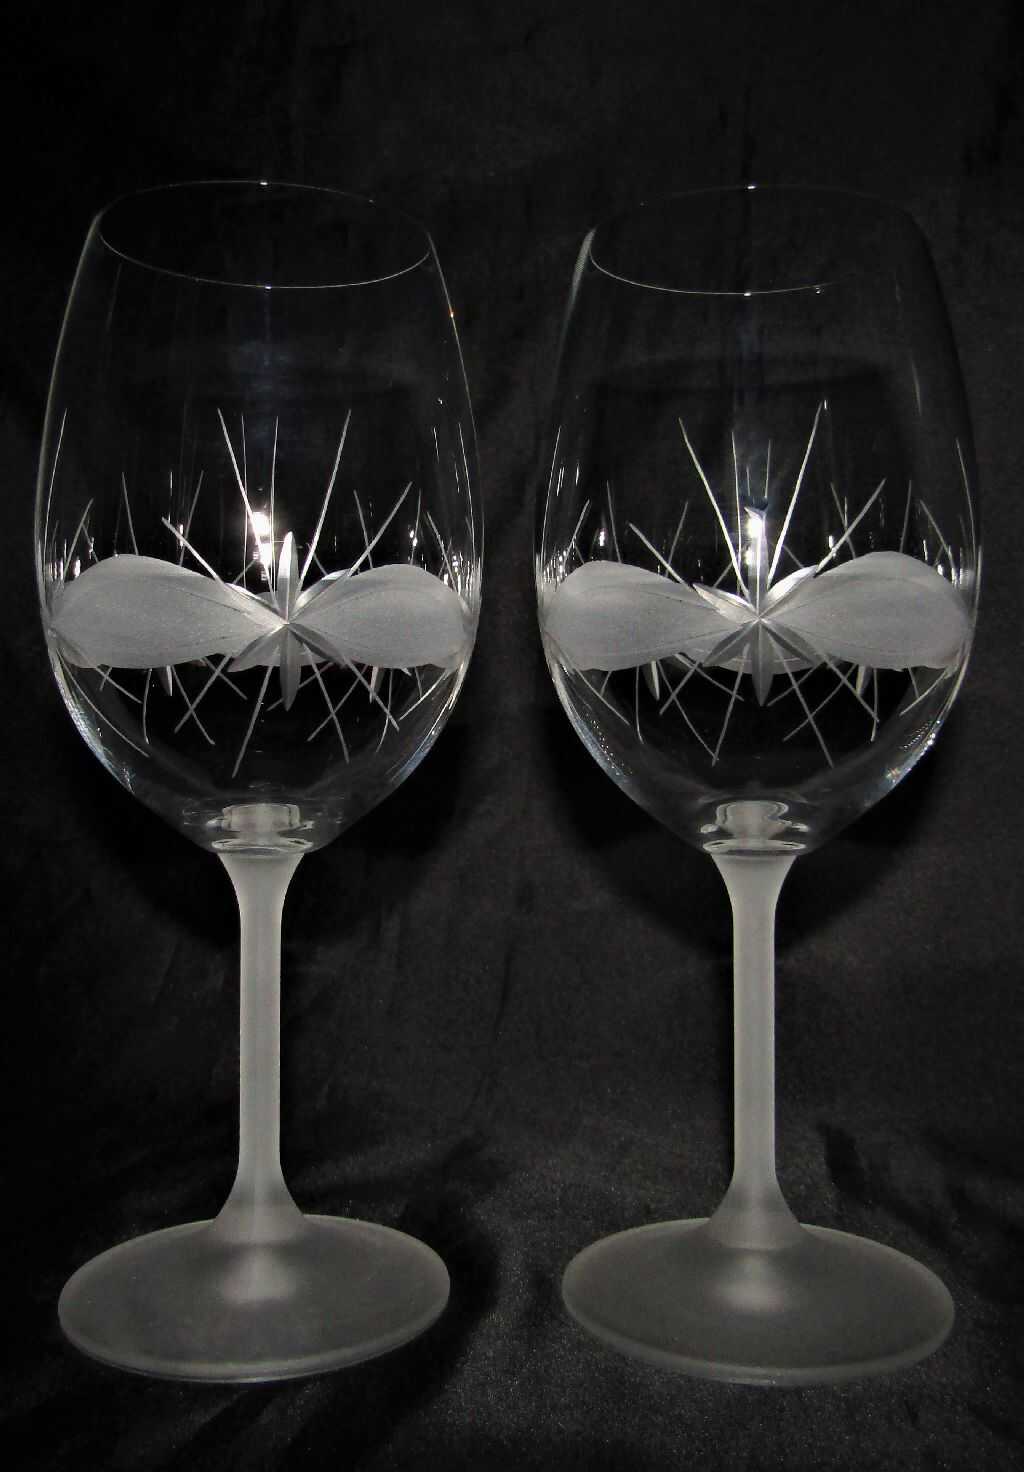 Rotwein Glas/ Rotweingläser Hand geschliffen Muster Kante RW-181 490 ml 6 Stück.